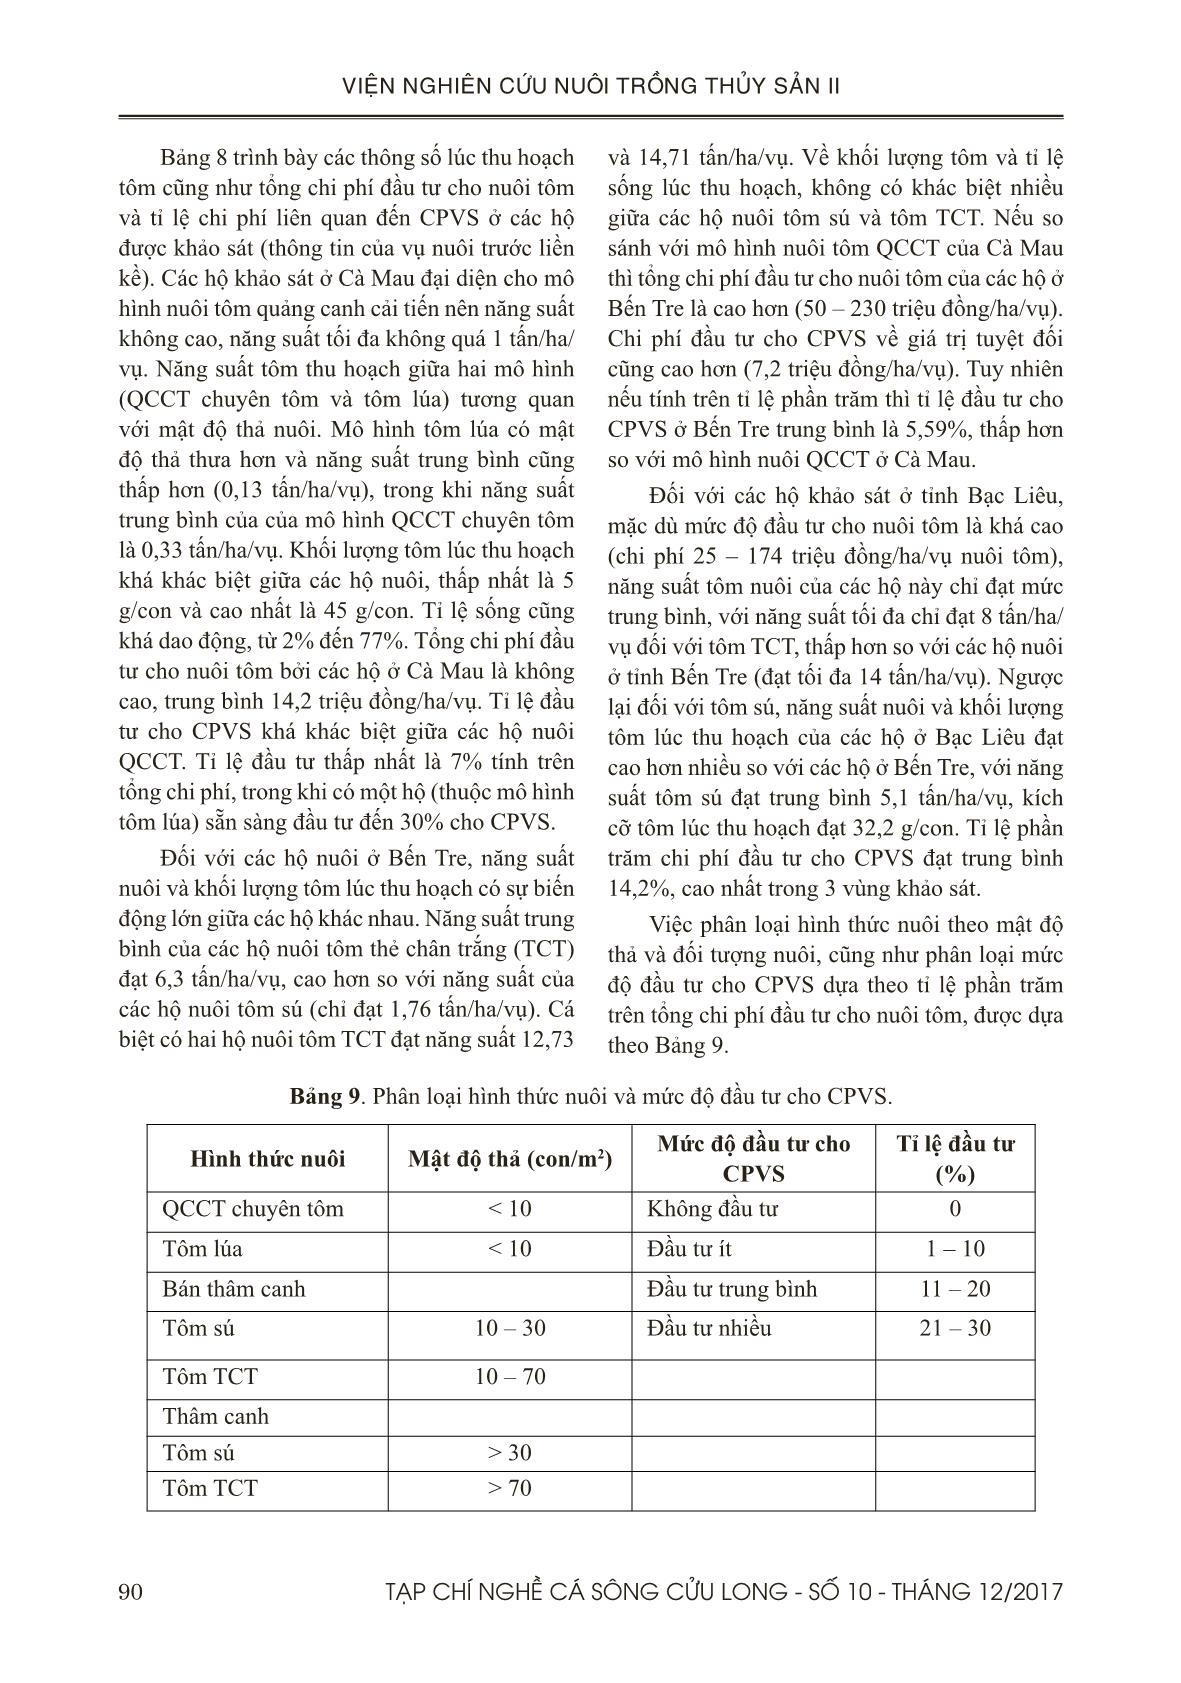 Đánh giá tình hình sử dụng chế phẩm vi sinh trong nuôi tôm ở đồng bằng sông Cửu Long trang 8